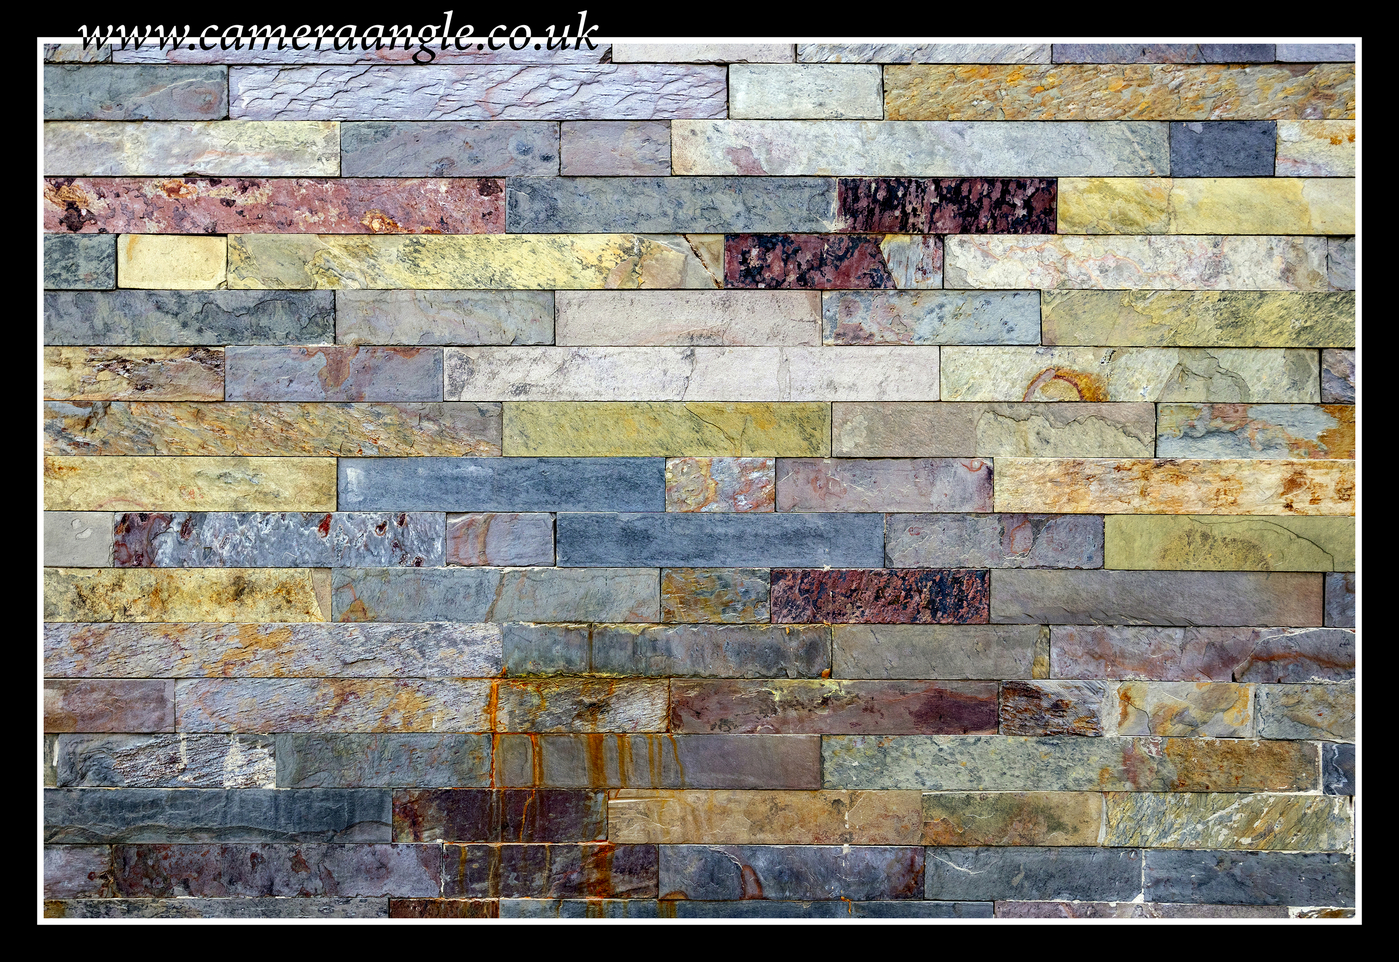 Brickwork
Keywords: Dubai Brickwork